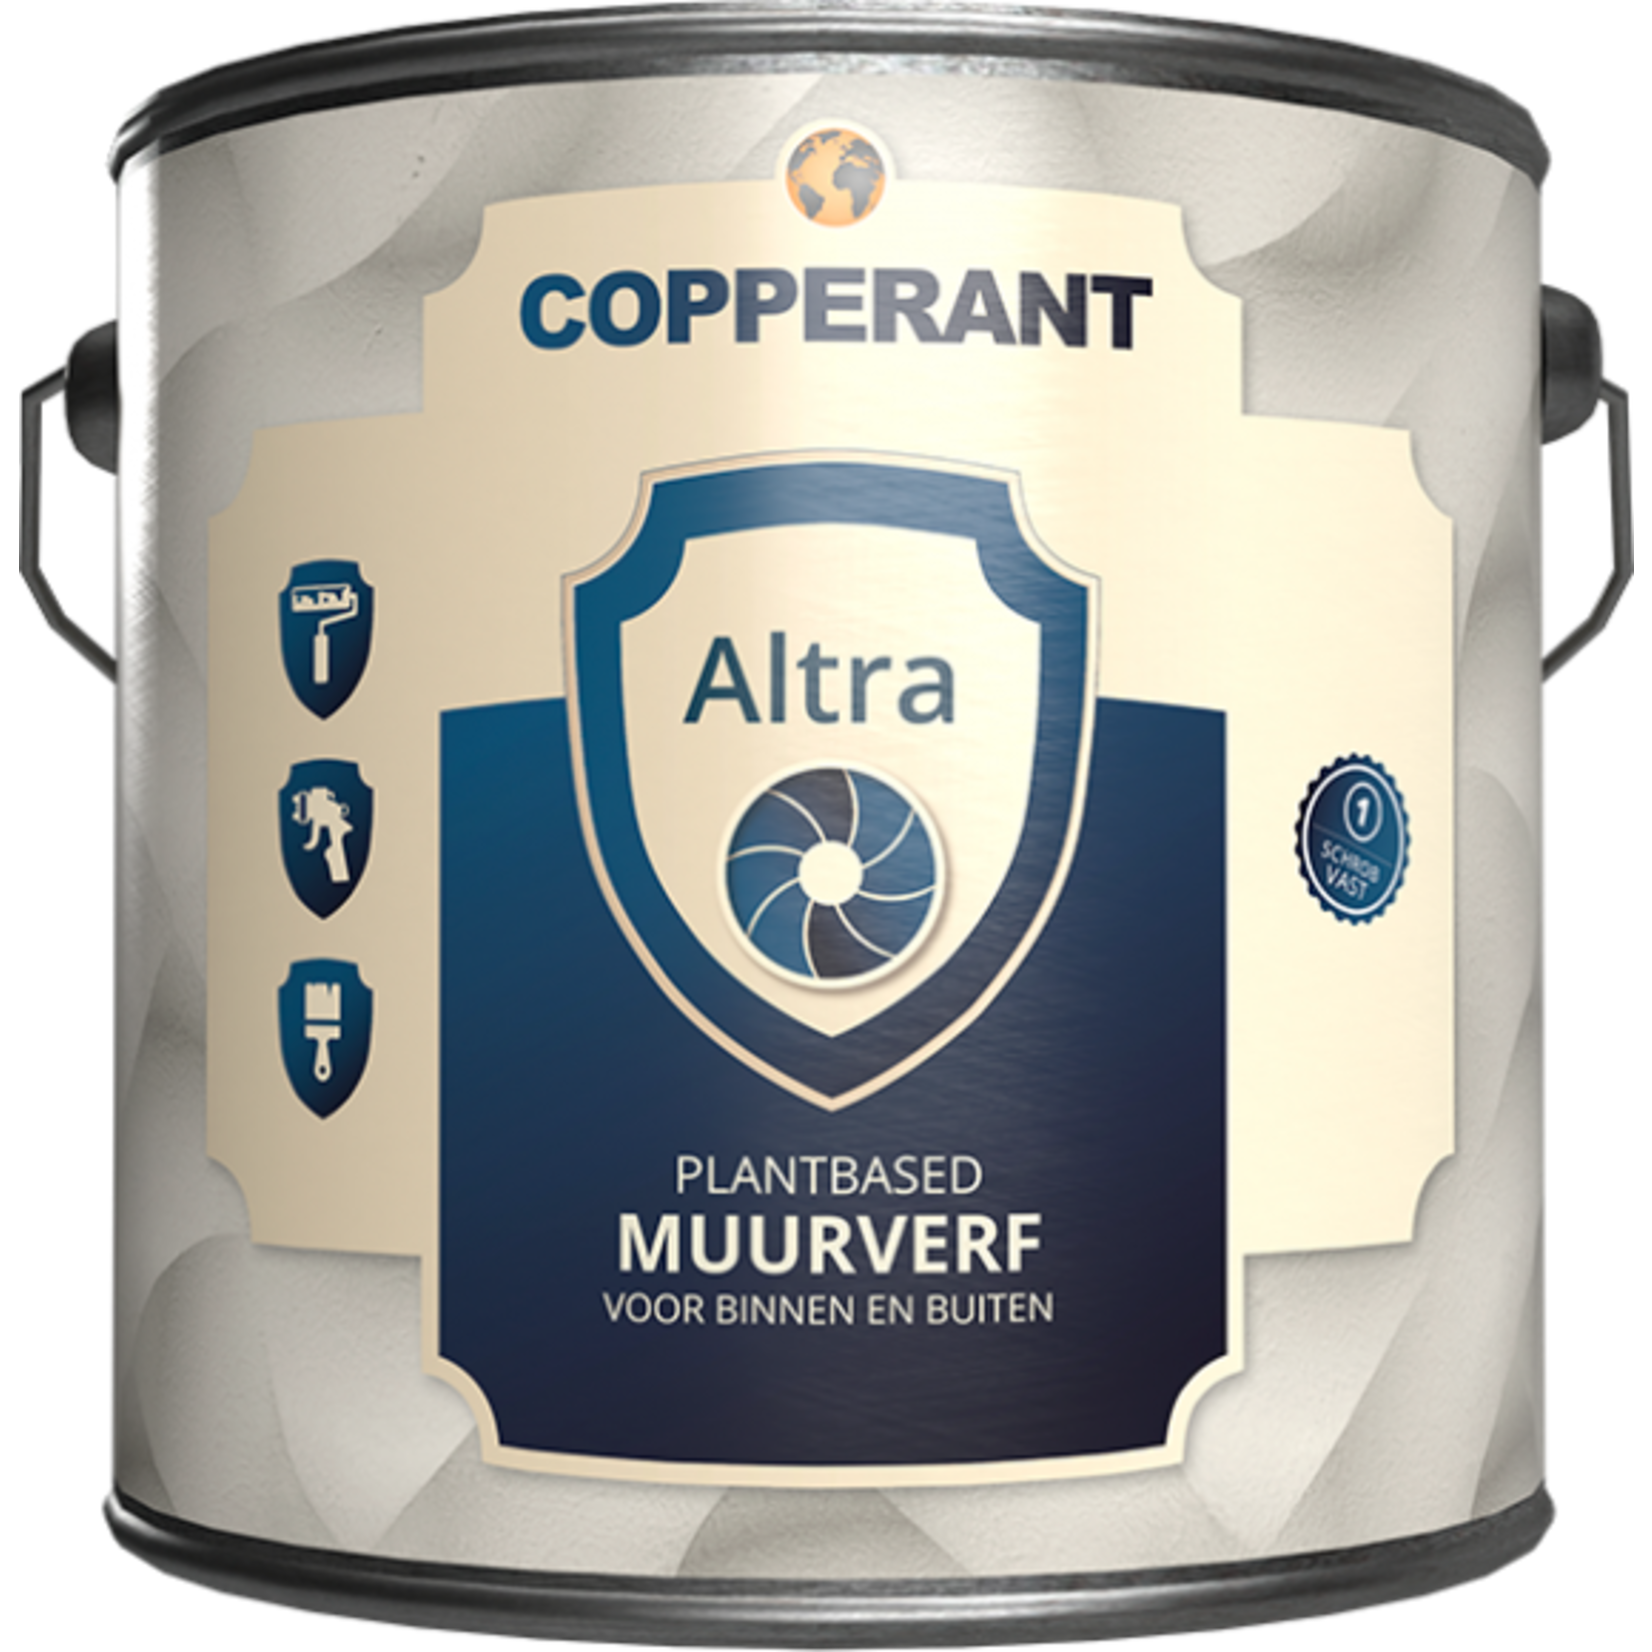 Copperant Altra muurverf